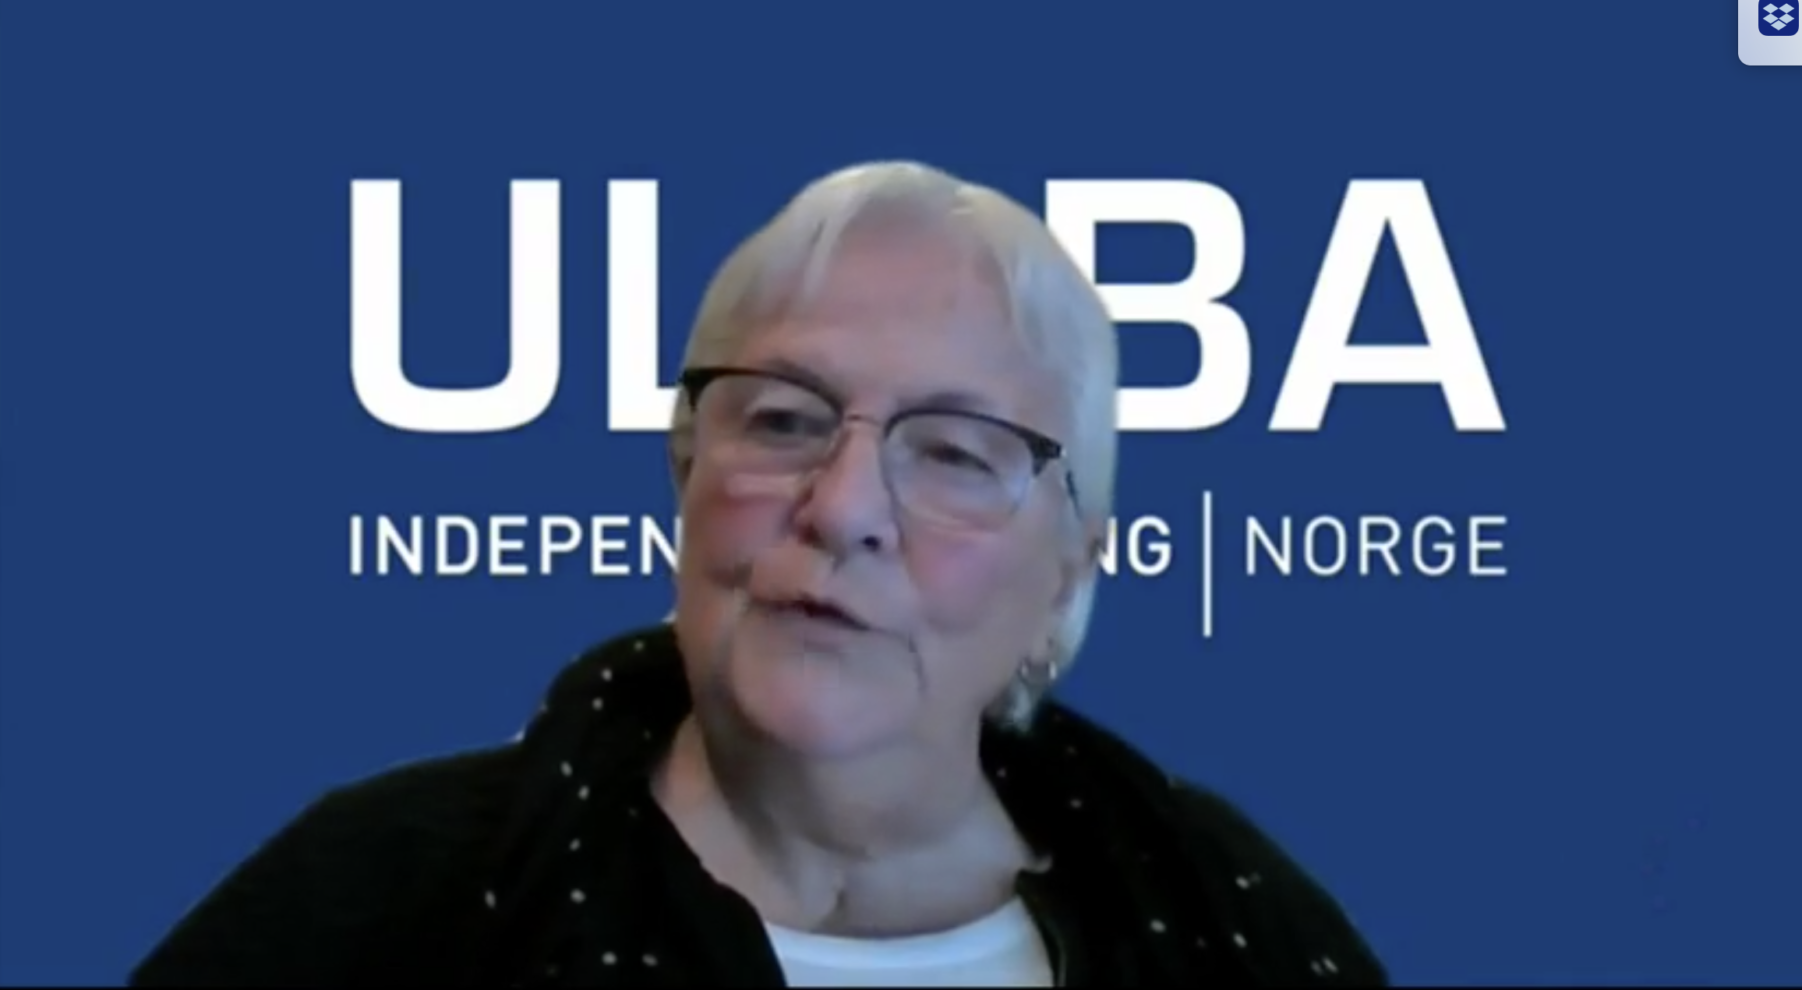 Skjermbilde/portrett av Ann Kristin Krokan med Ulobas logo i bakgrunnen.